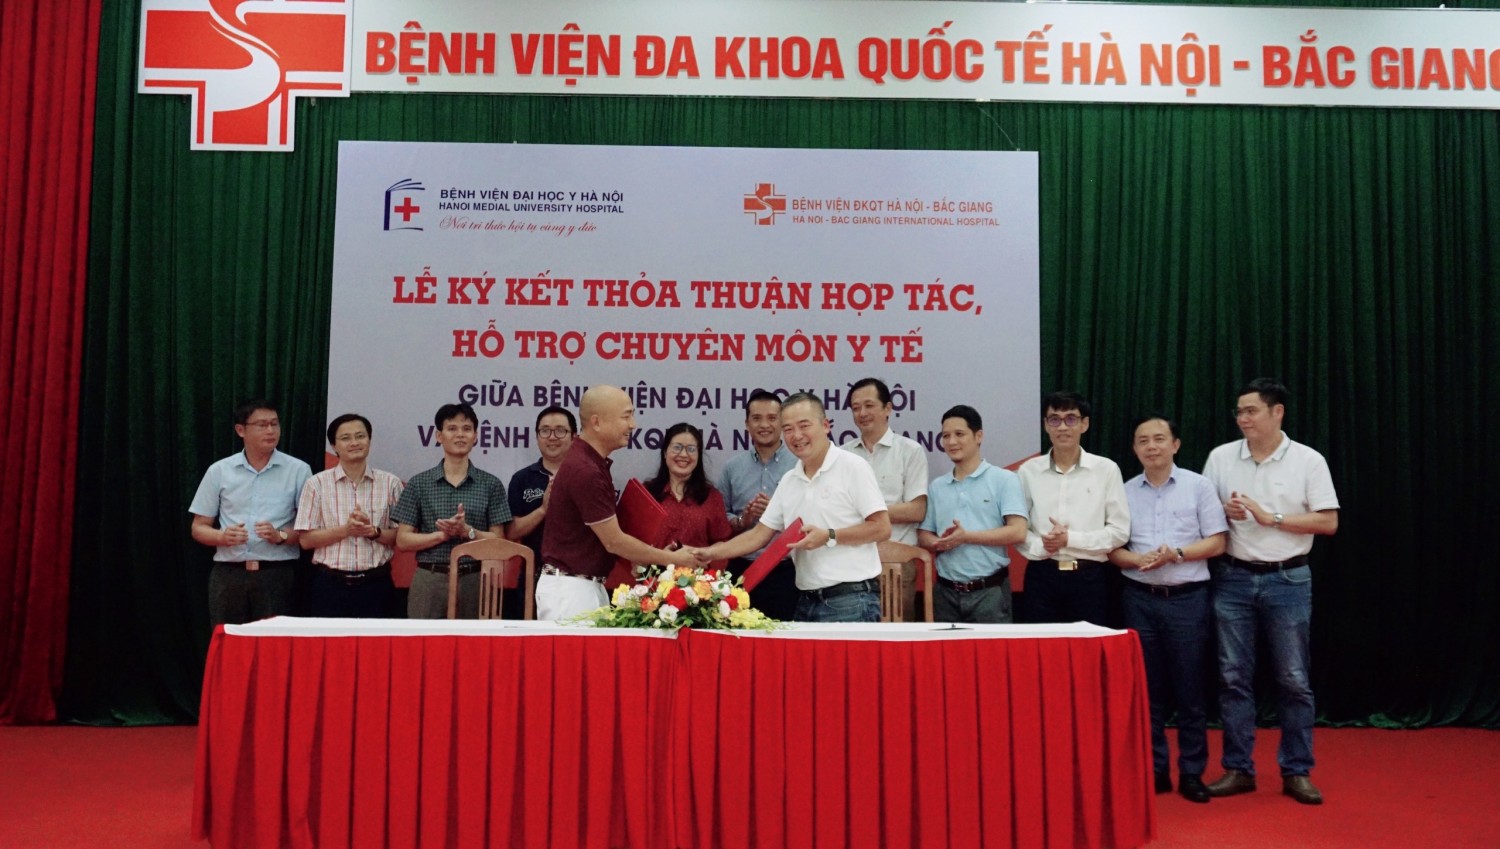 Lễ ký kết thỏa thuận hợp tác, hỗ trợ chuyên môn y tế giữa Bệnh viện Đại học Y Hà Nội và Bệnh viện ĐKQT Hà Nội – Bắc Giang